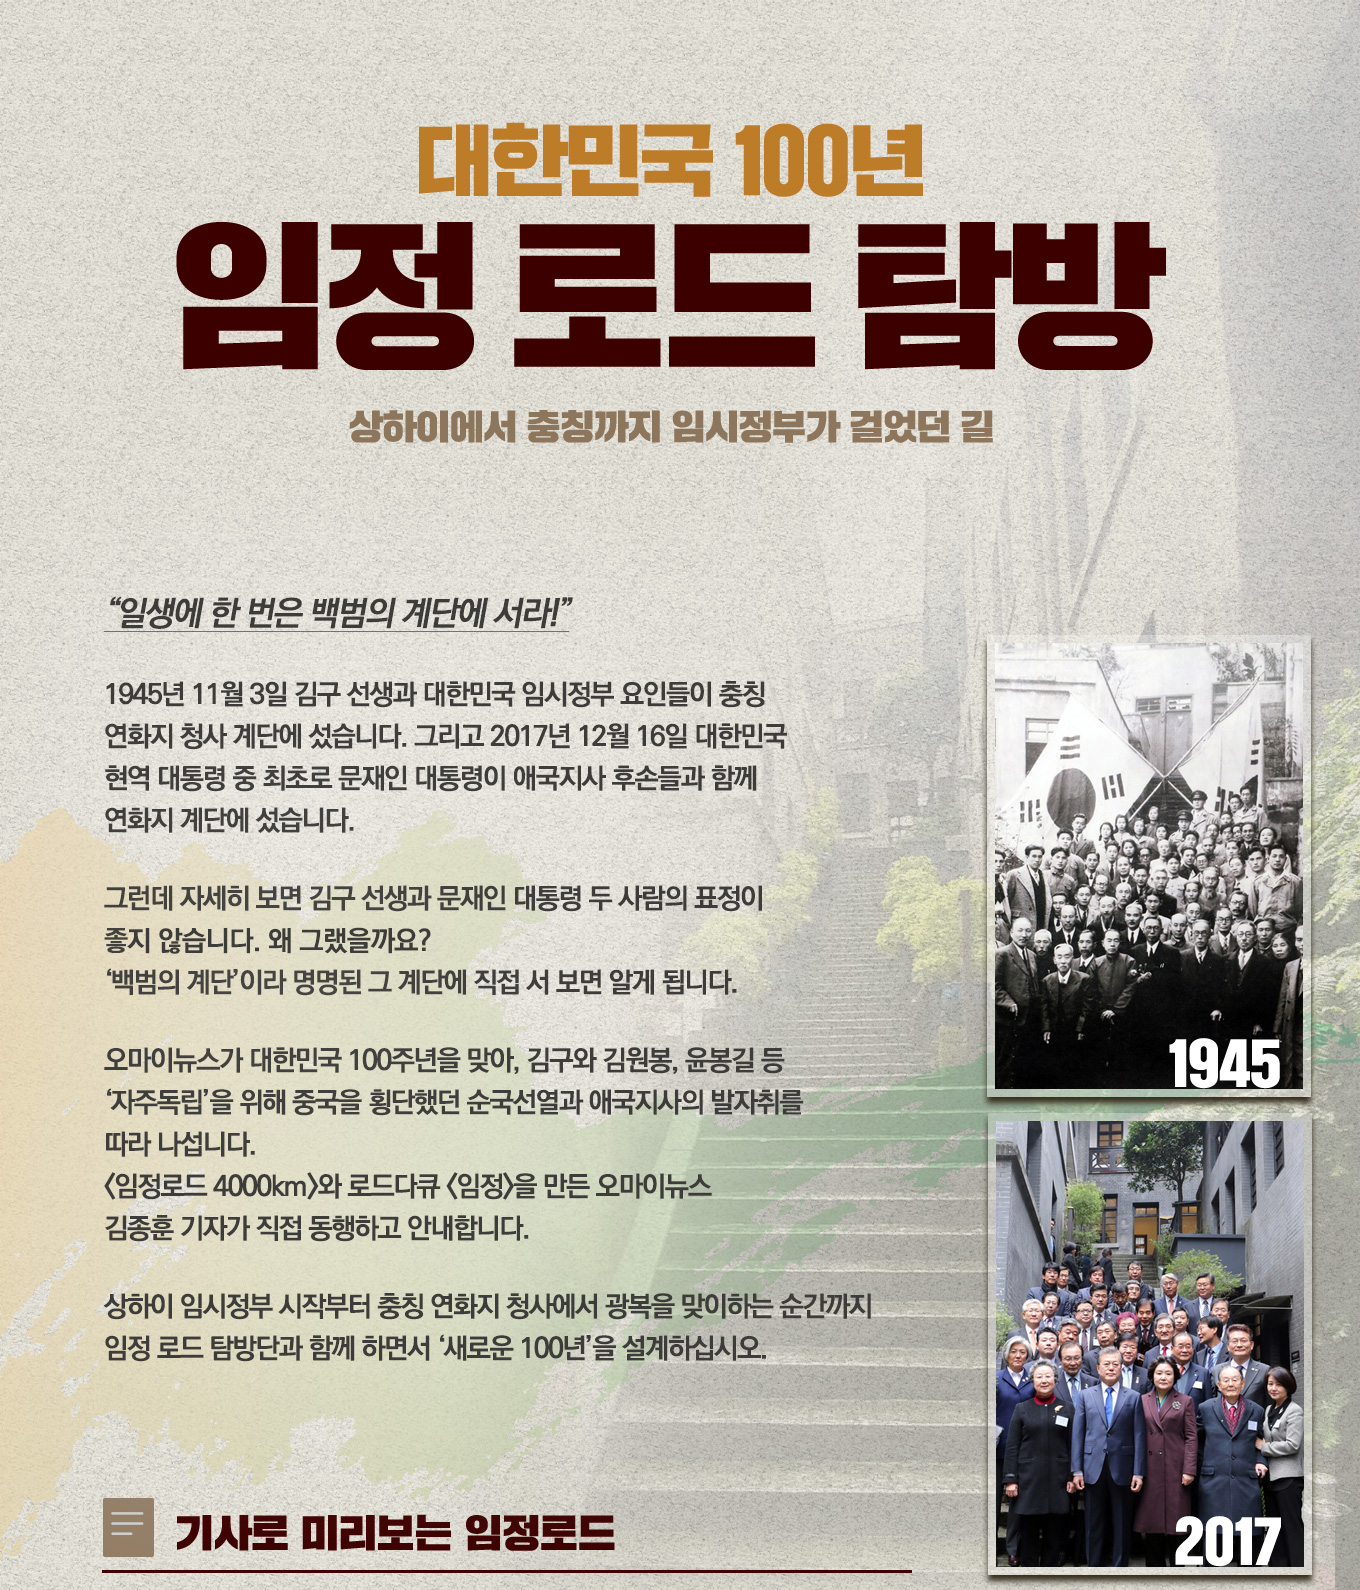 대한민국 100년, 임정 로드 탐방, 상하이에서 충칭까지 임시정부가 걸었던 길